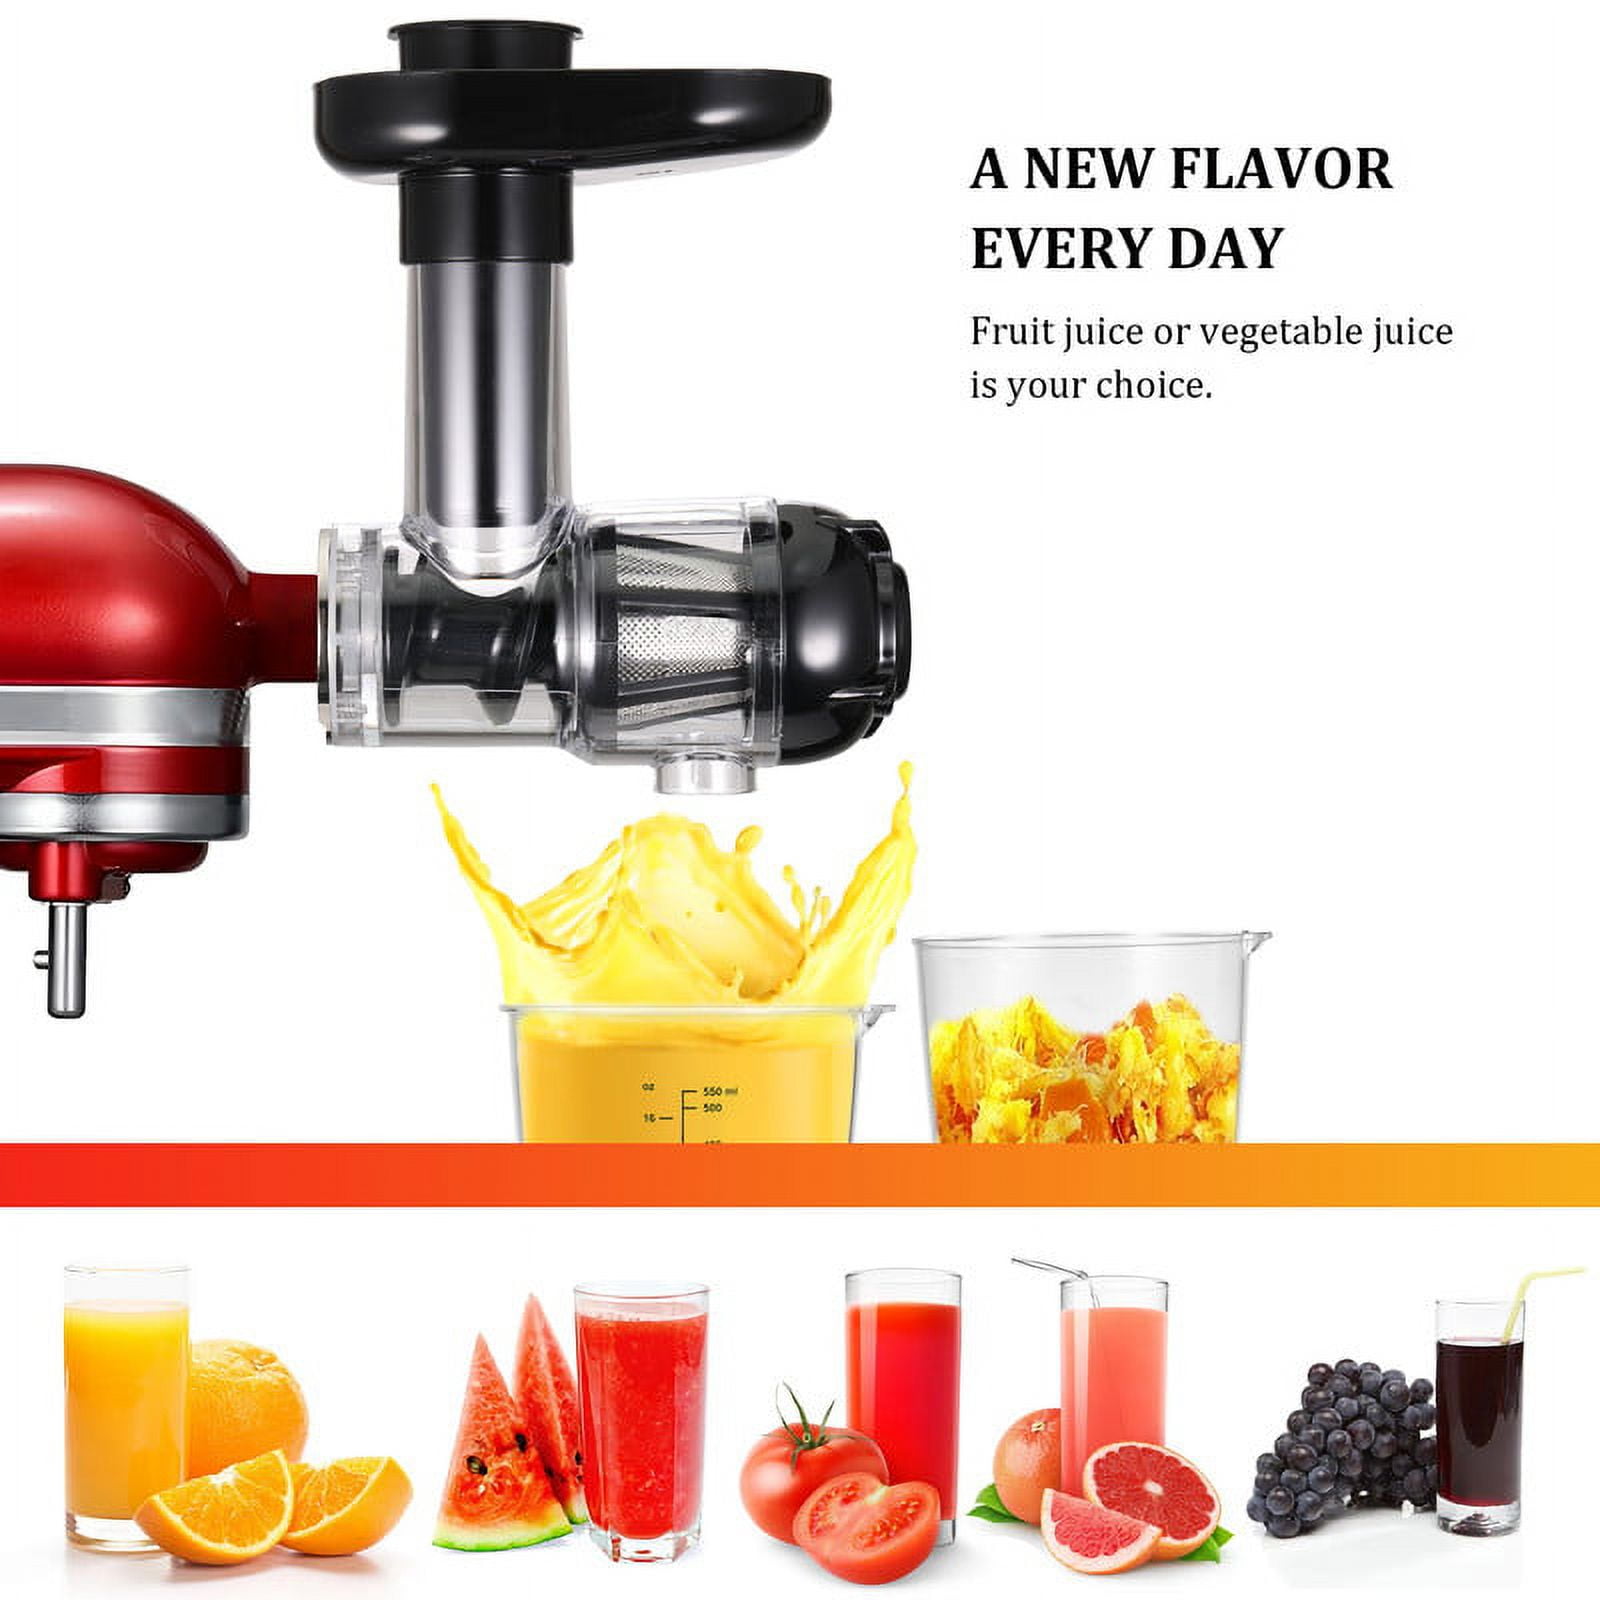 H3000 Part, Juicer Slicer Attachment, Fruit Juicer Parts, Fruit Juicer